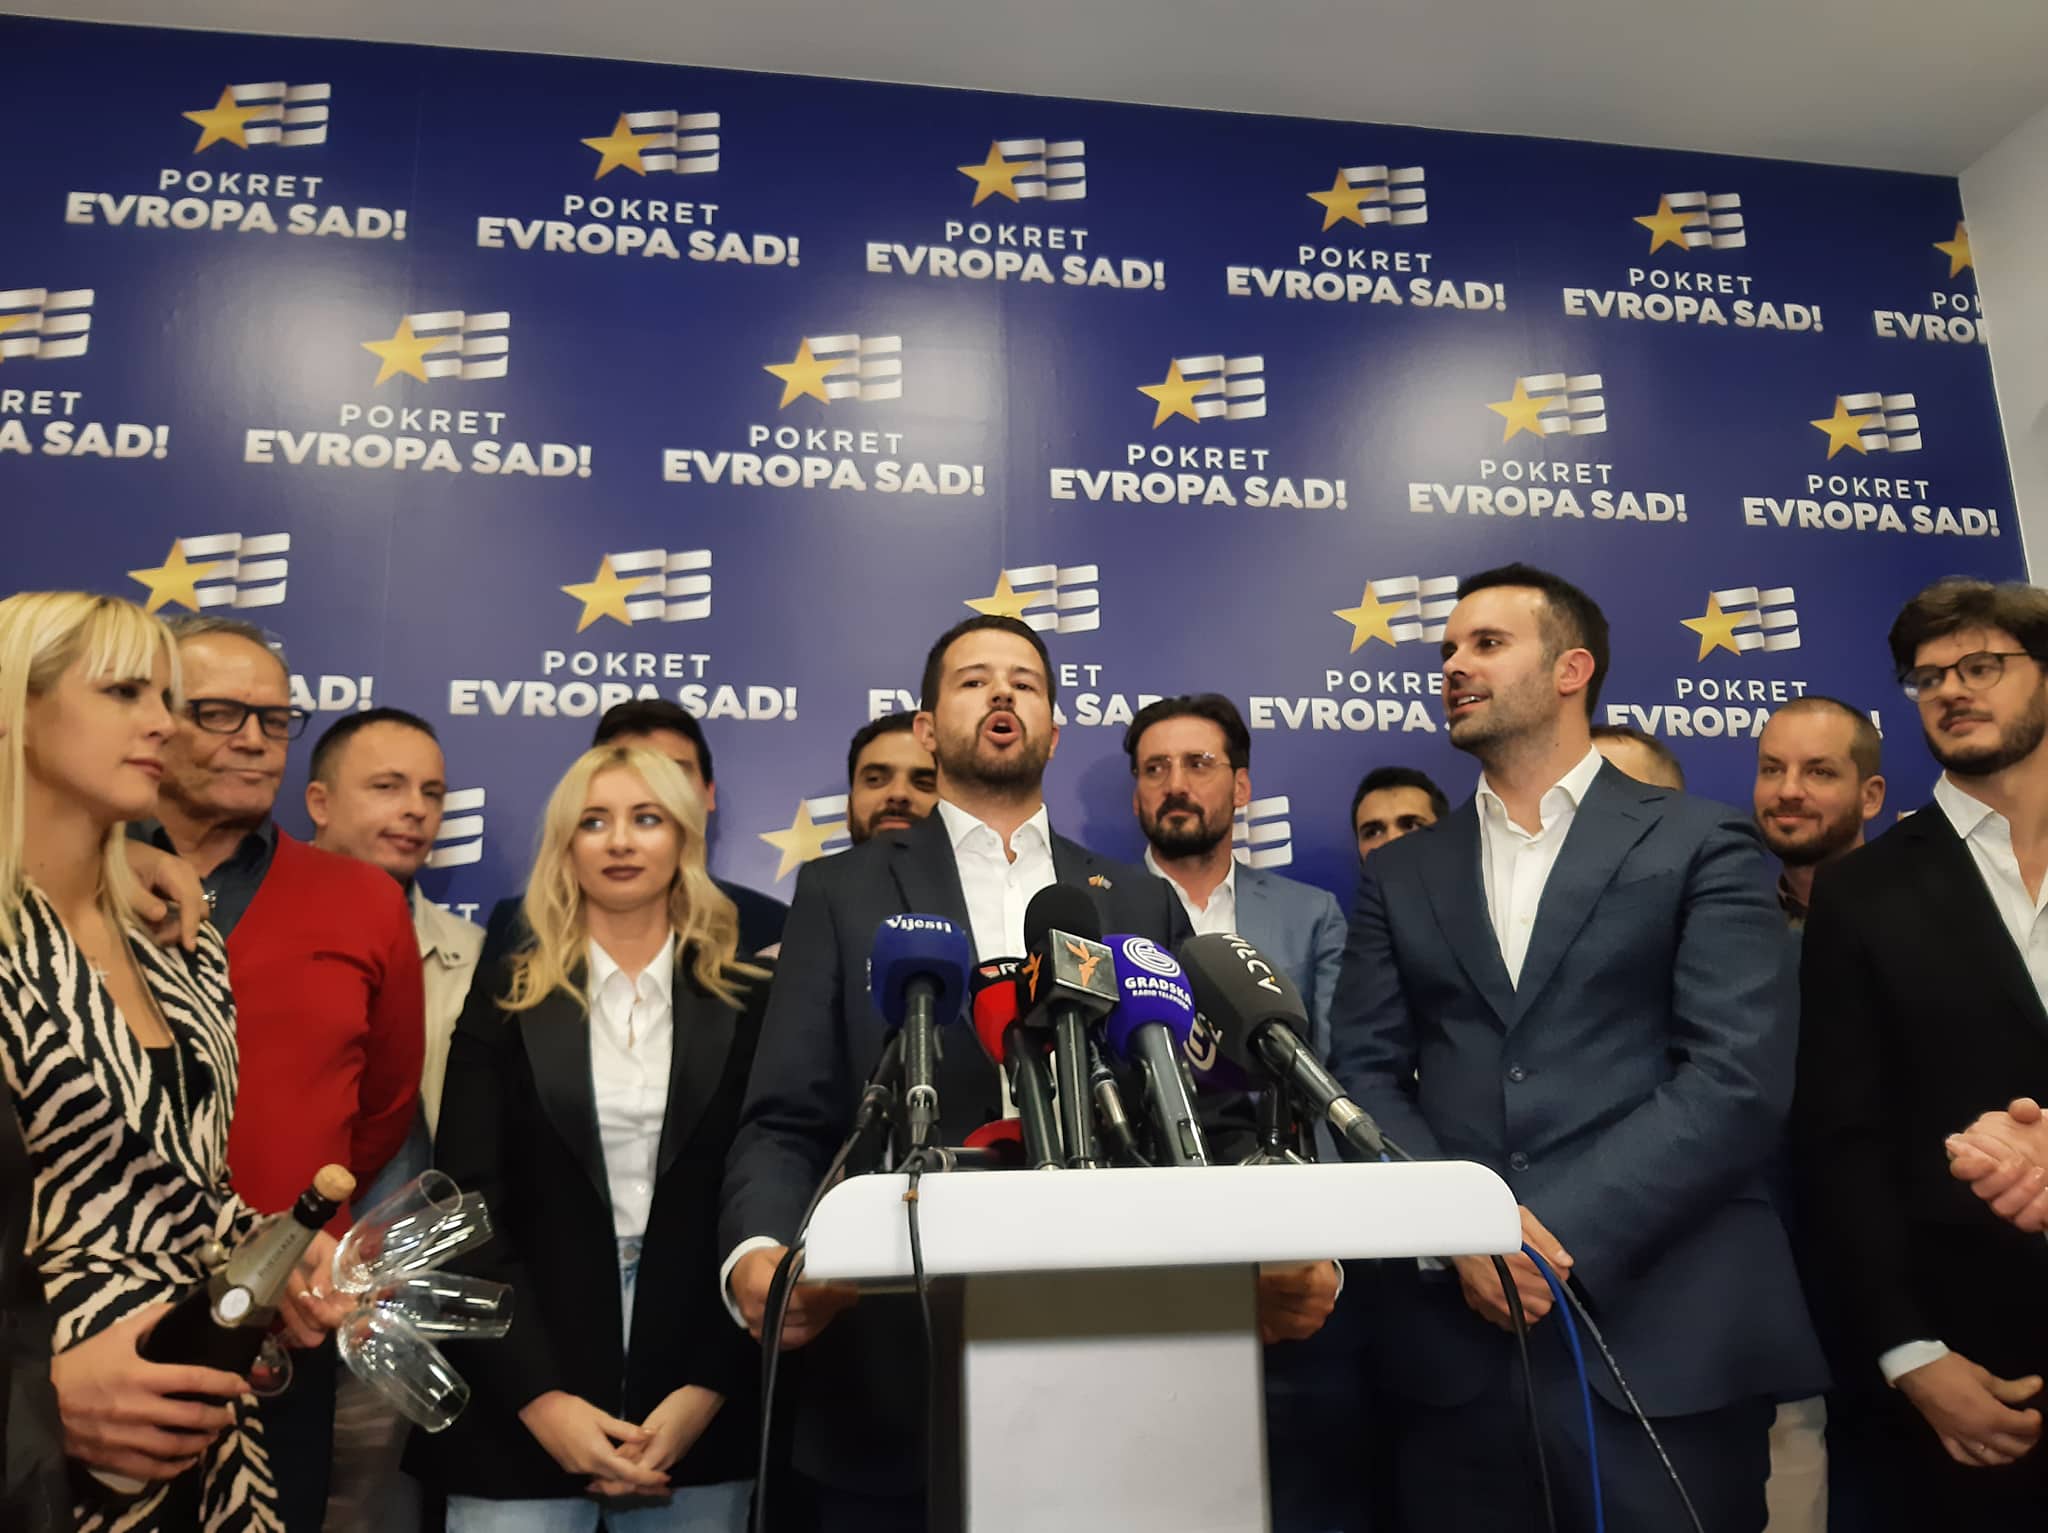 Milatović: Srećna vam sloboda; Spajić: Zahvaljujući Evropi sad, DPS izgubio lokalne izbore u Crnoj Gori